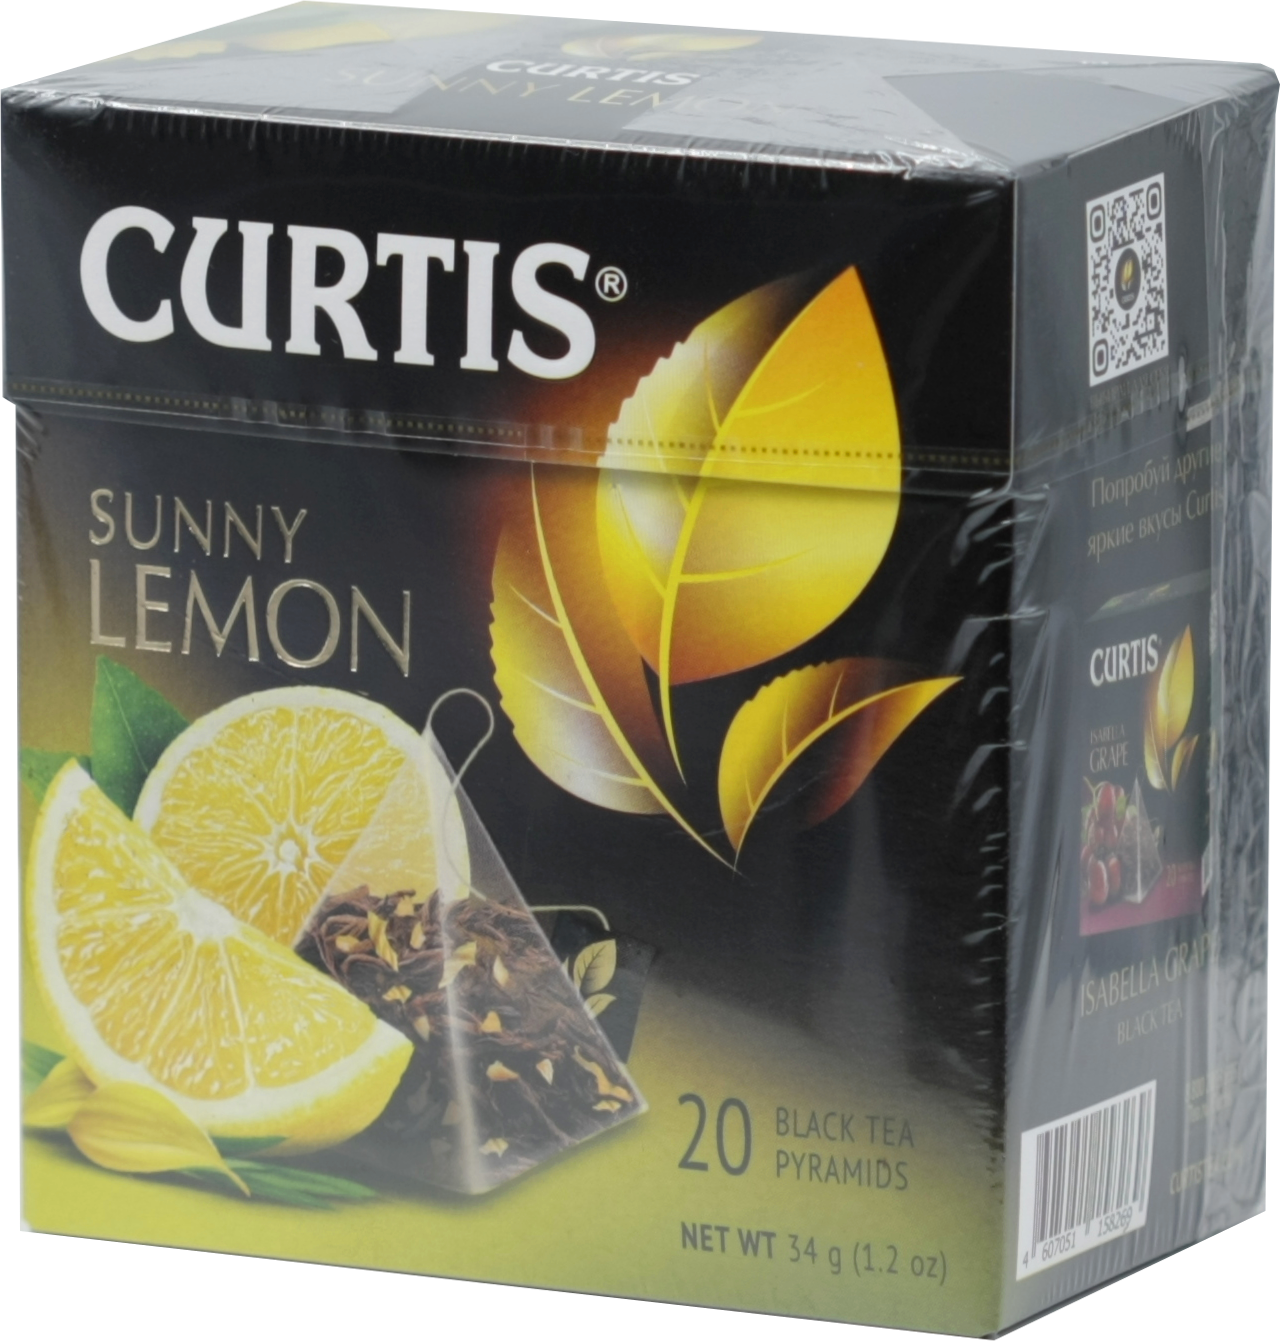 CURTIS. Sunny Lemon (пирамидки) 34 гр. карт.пачка, 20 пирамидки